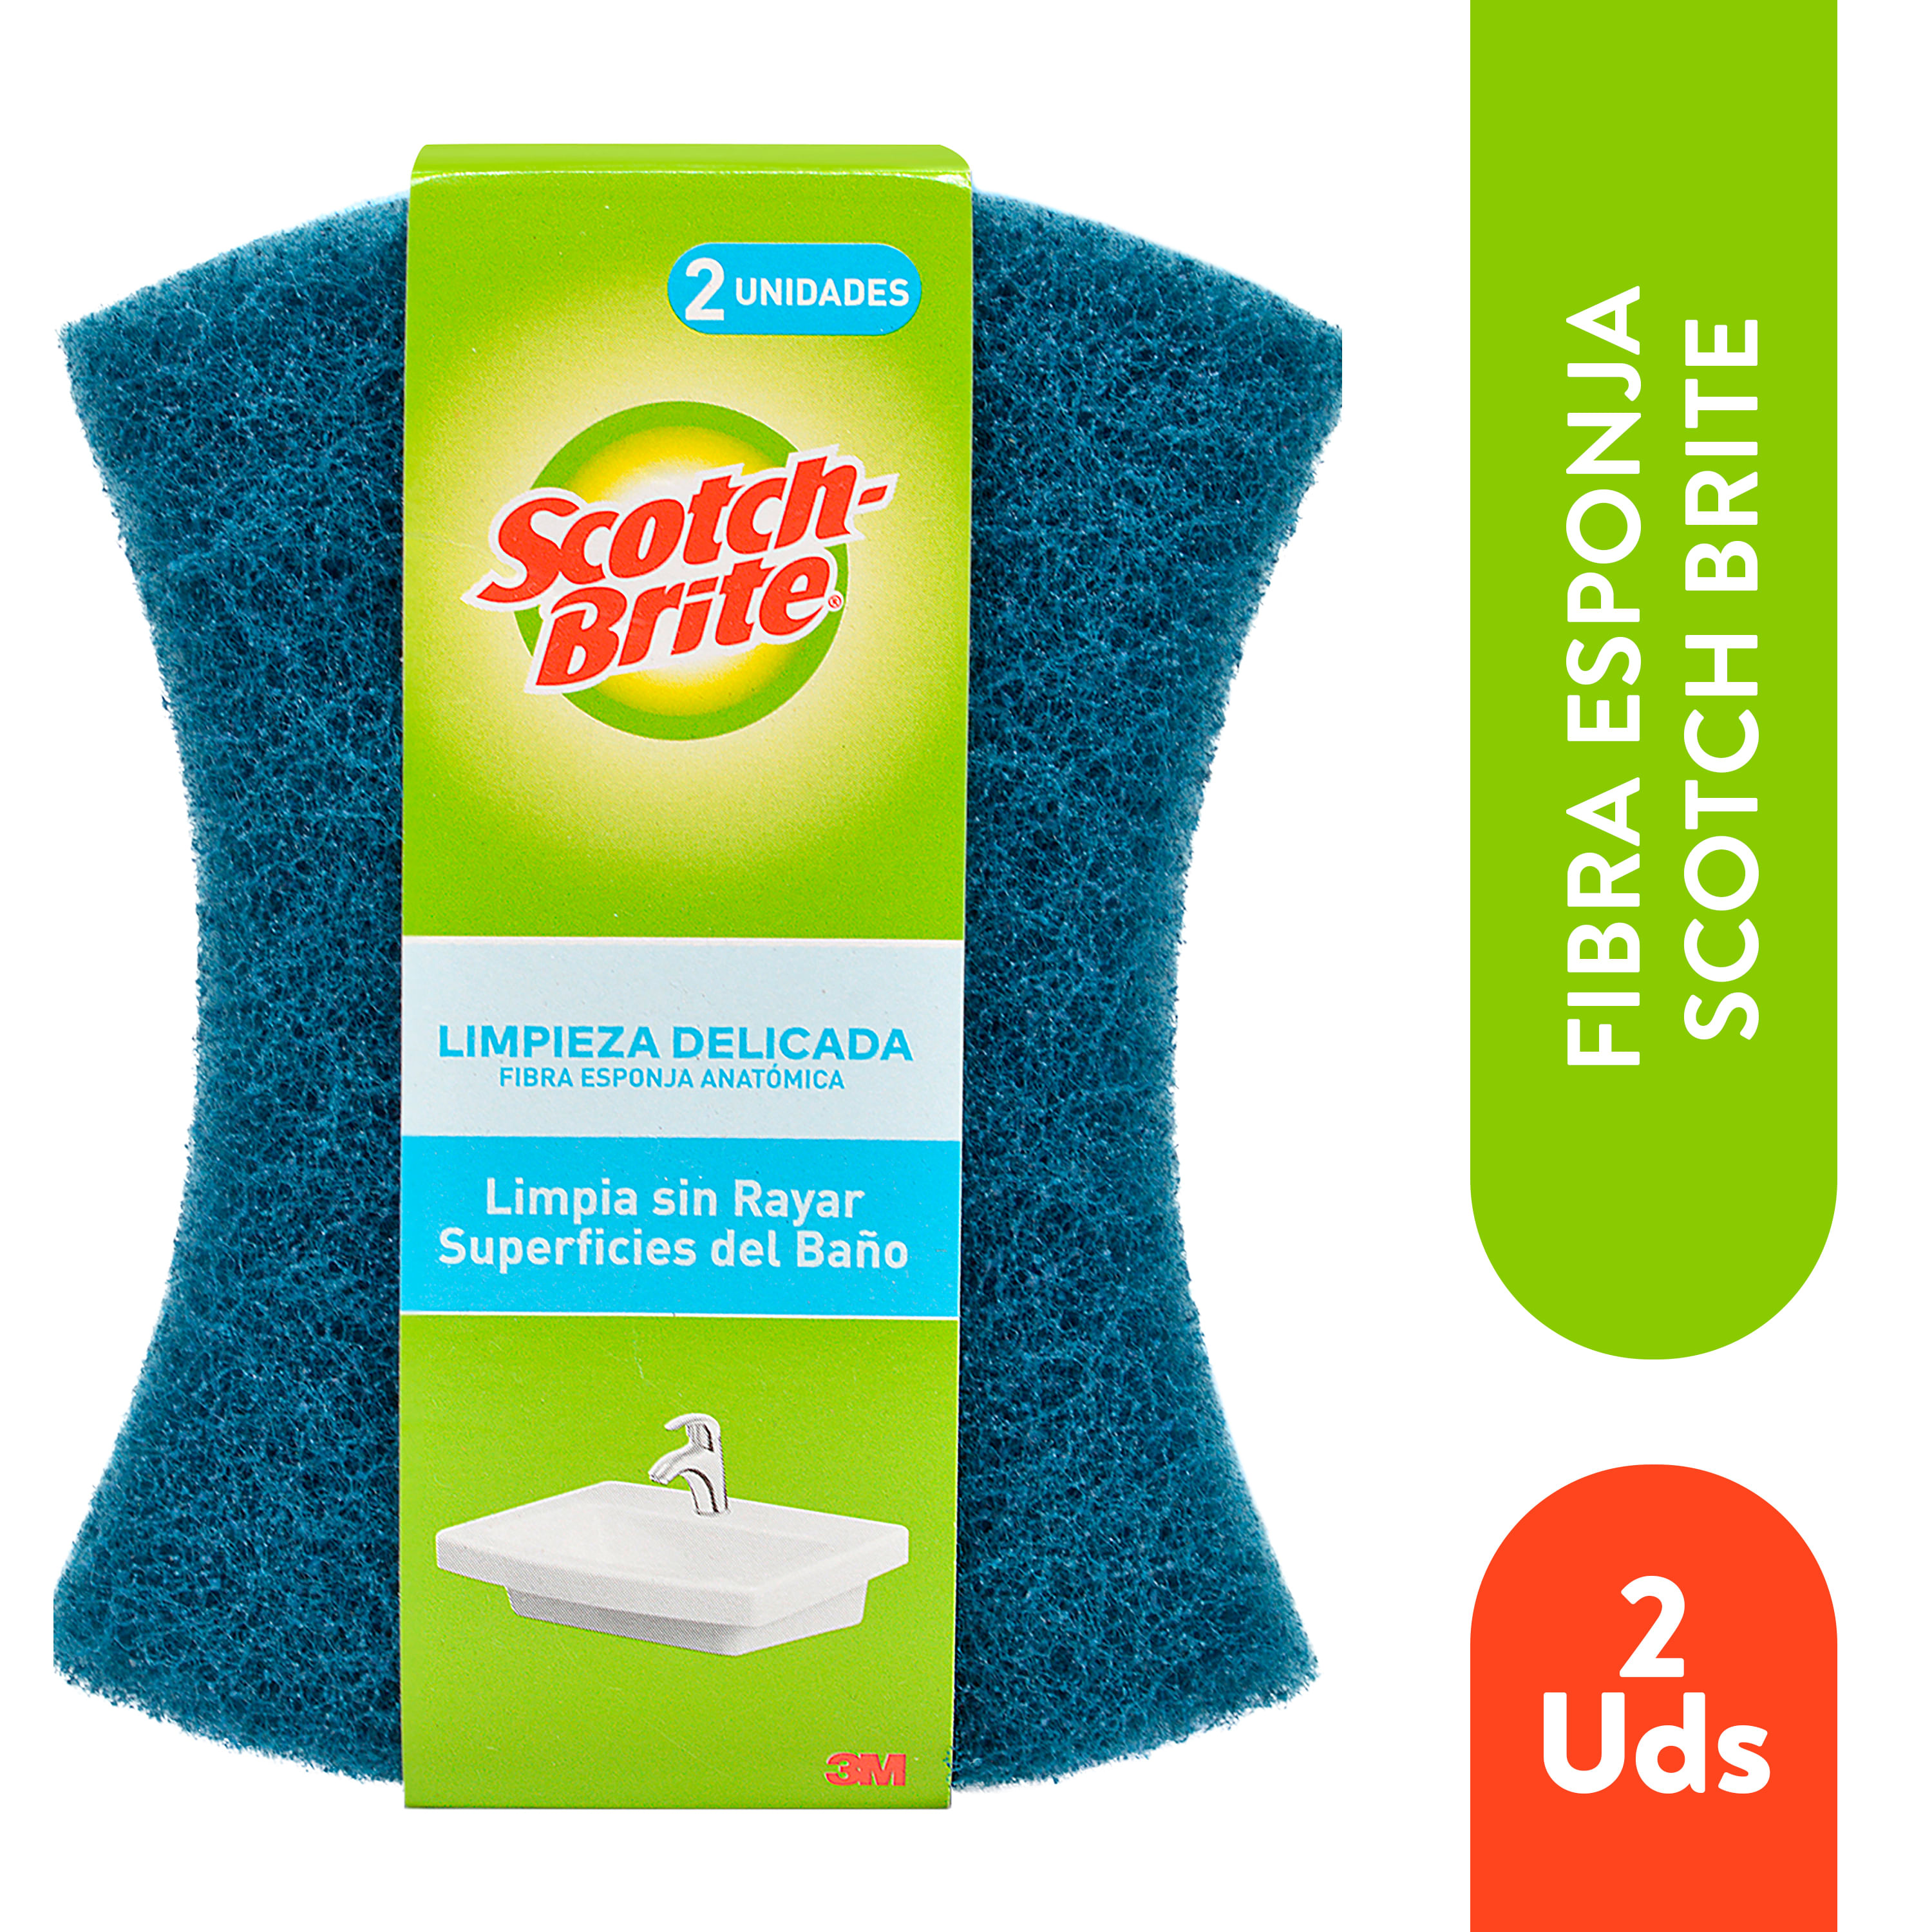 Comprar Scotch-Brite® Esponja Limpieza Delicada Cero Rayas Baño 2 und, Walmart Costa Rica - Maxi Palí